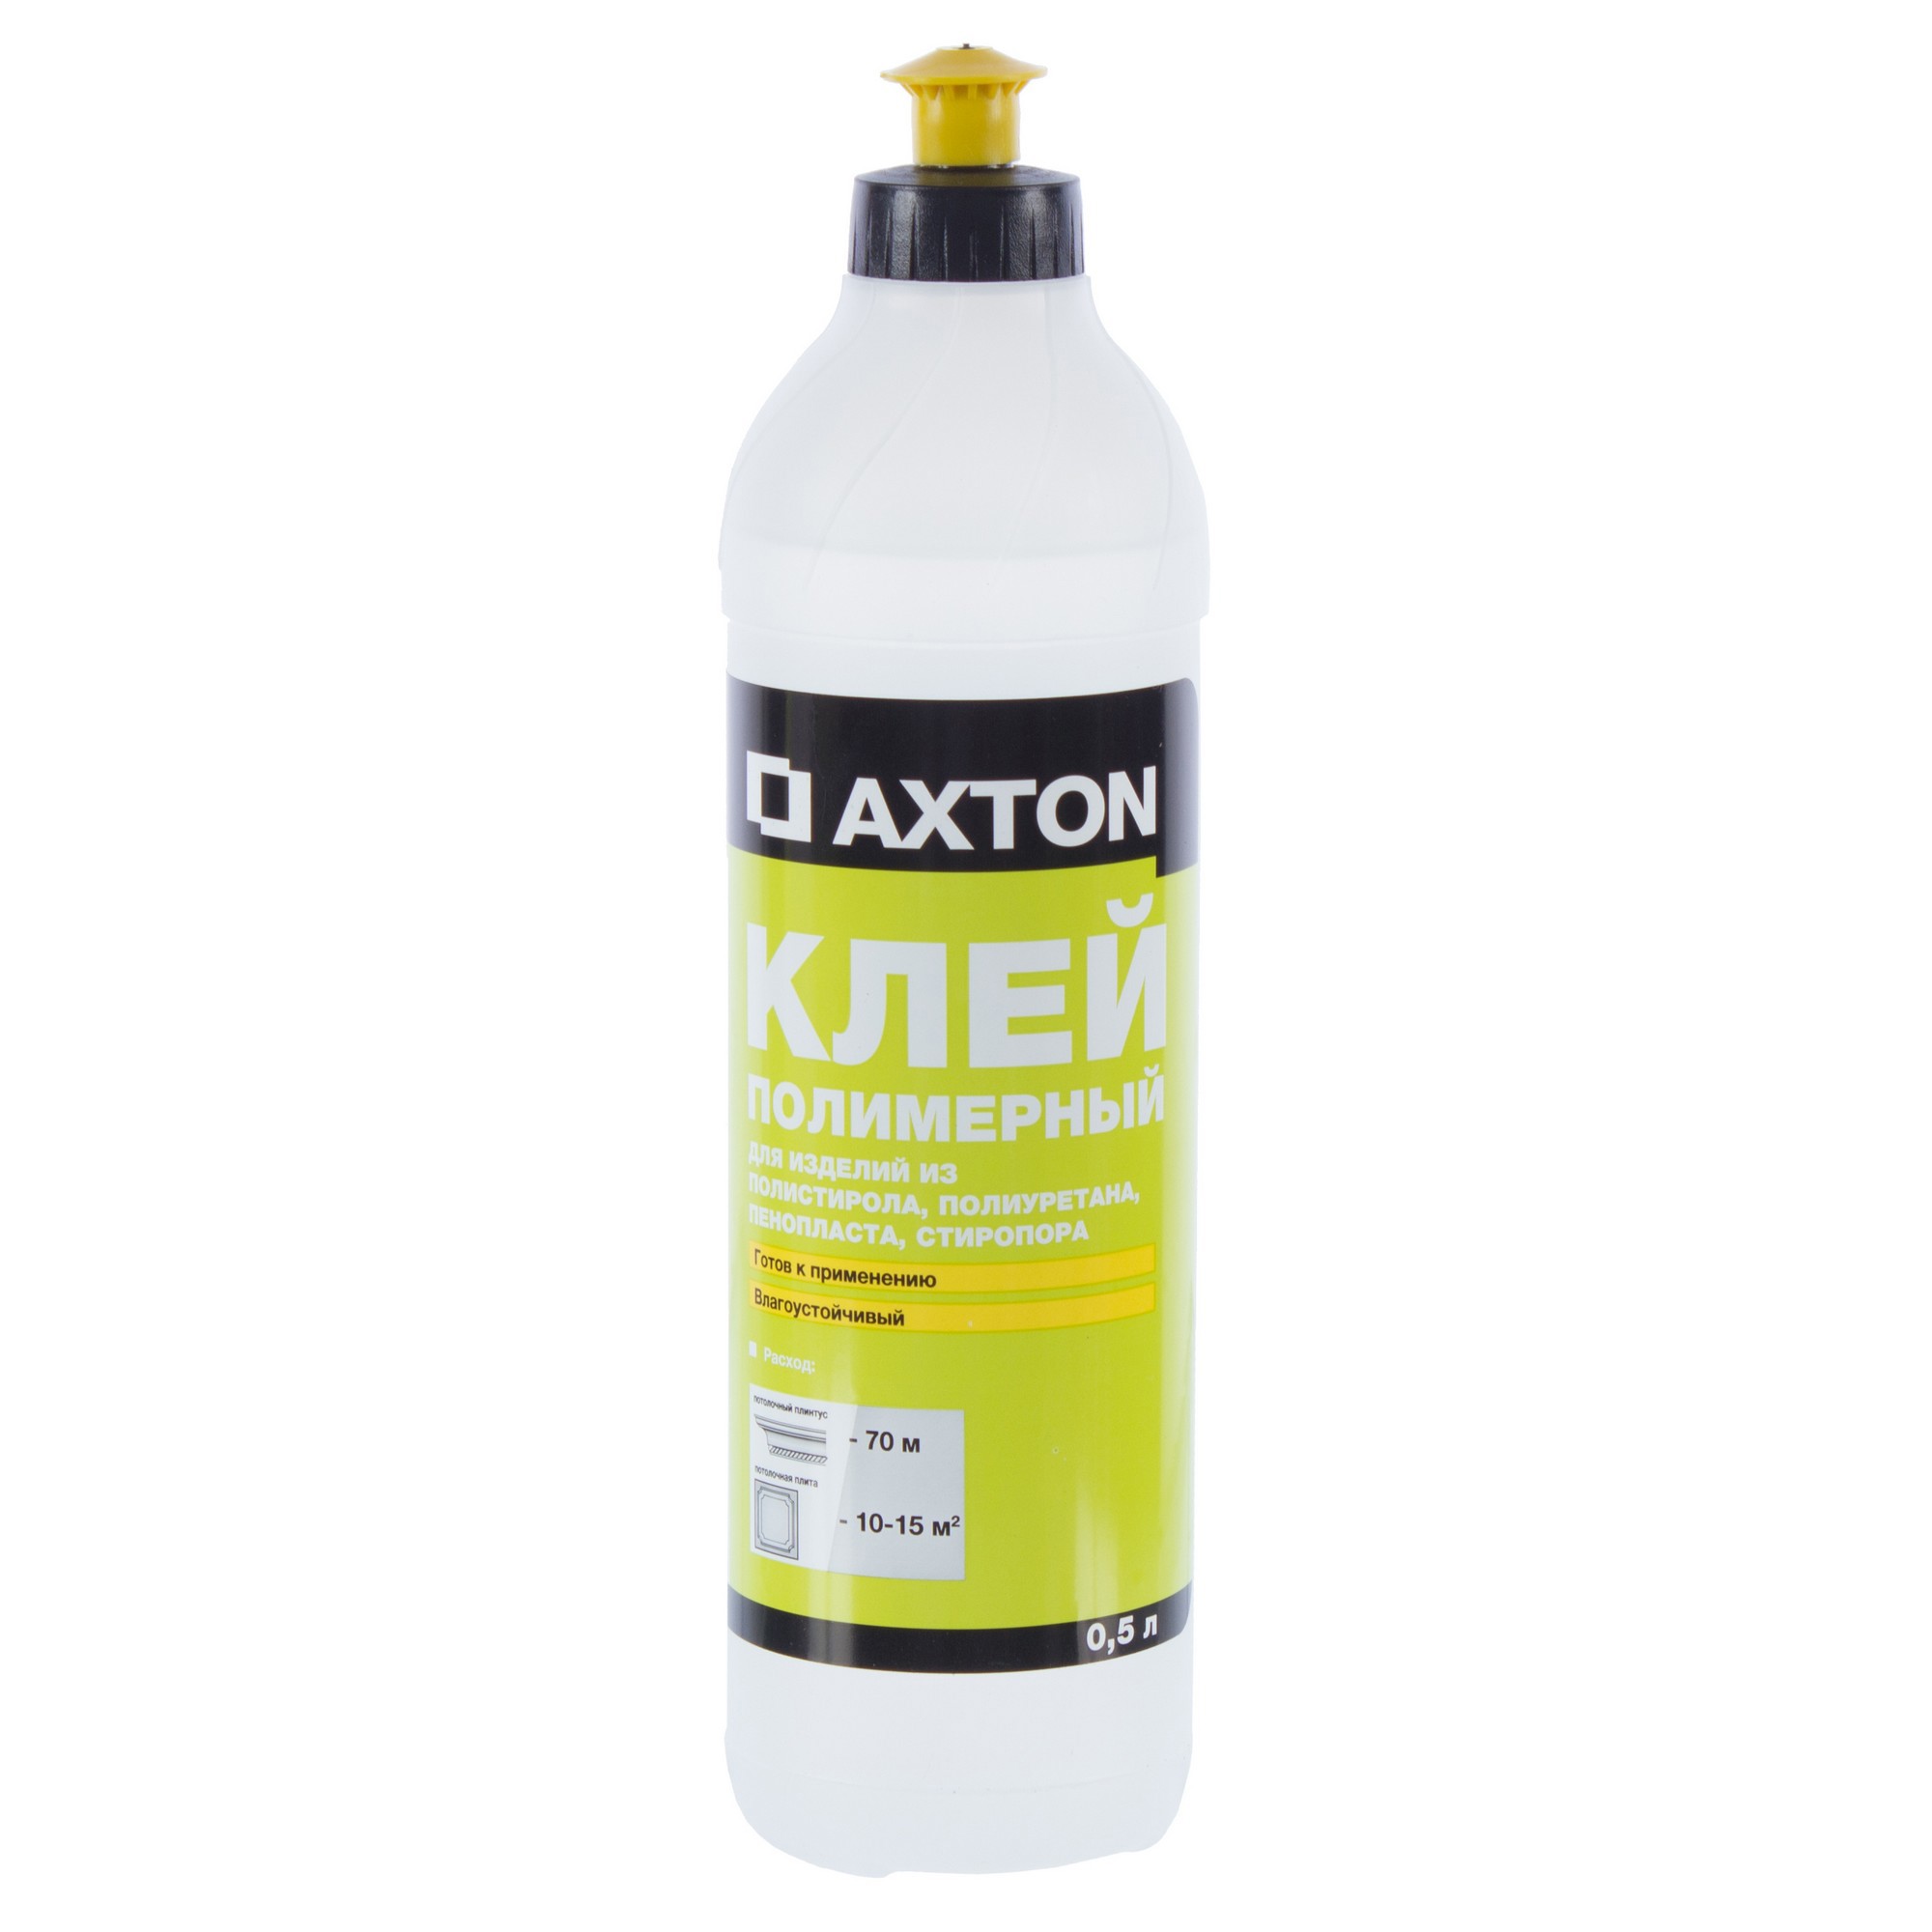  Axton для потолочных изделий полимерный 0.5 л ️  по цене 198 .